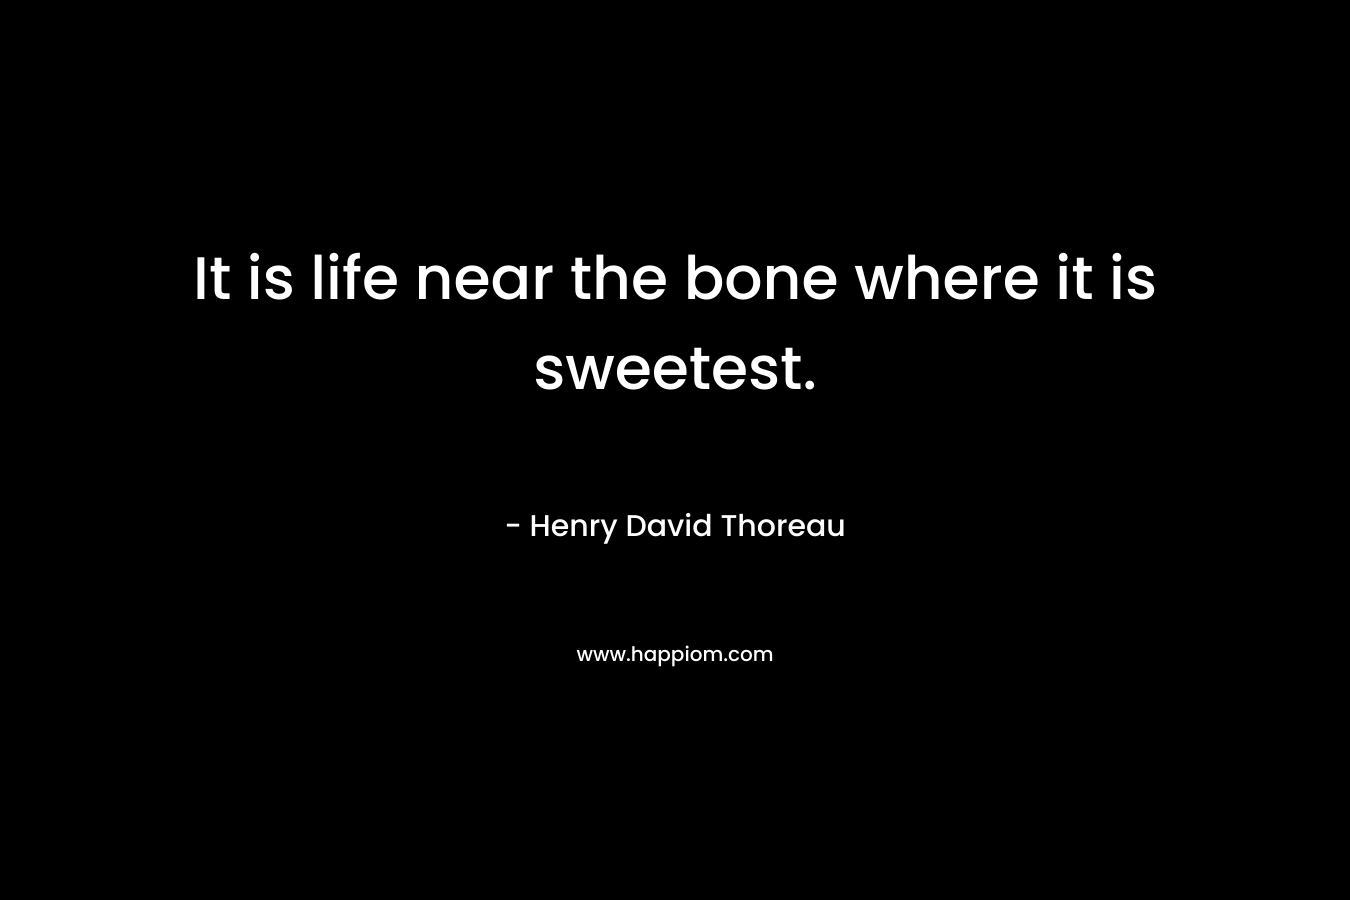 It is life near the bone where it is sweetest.